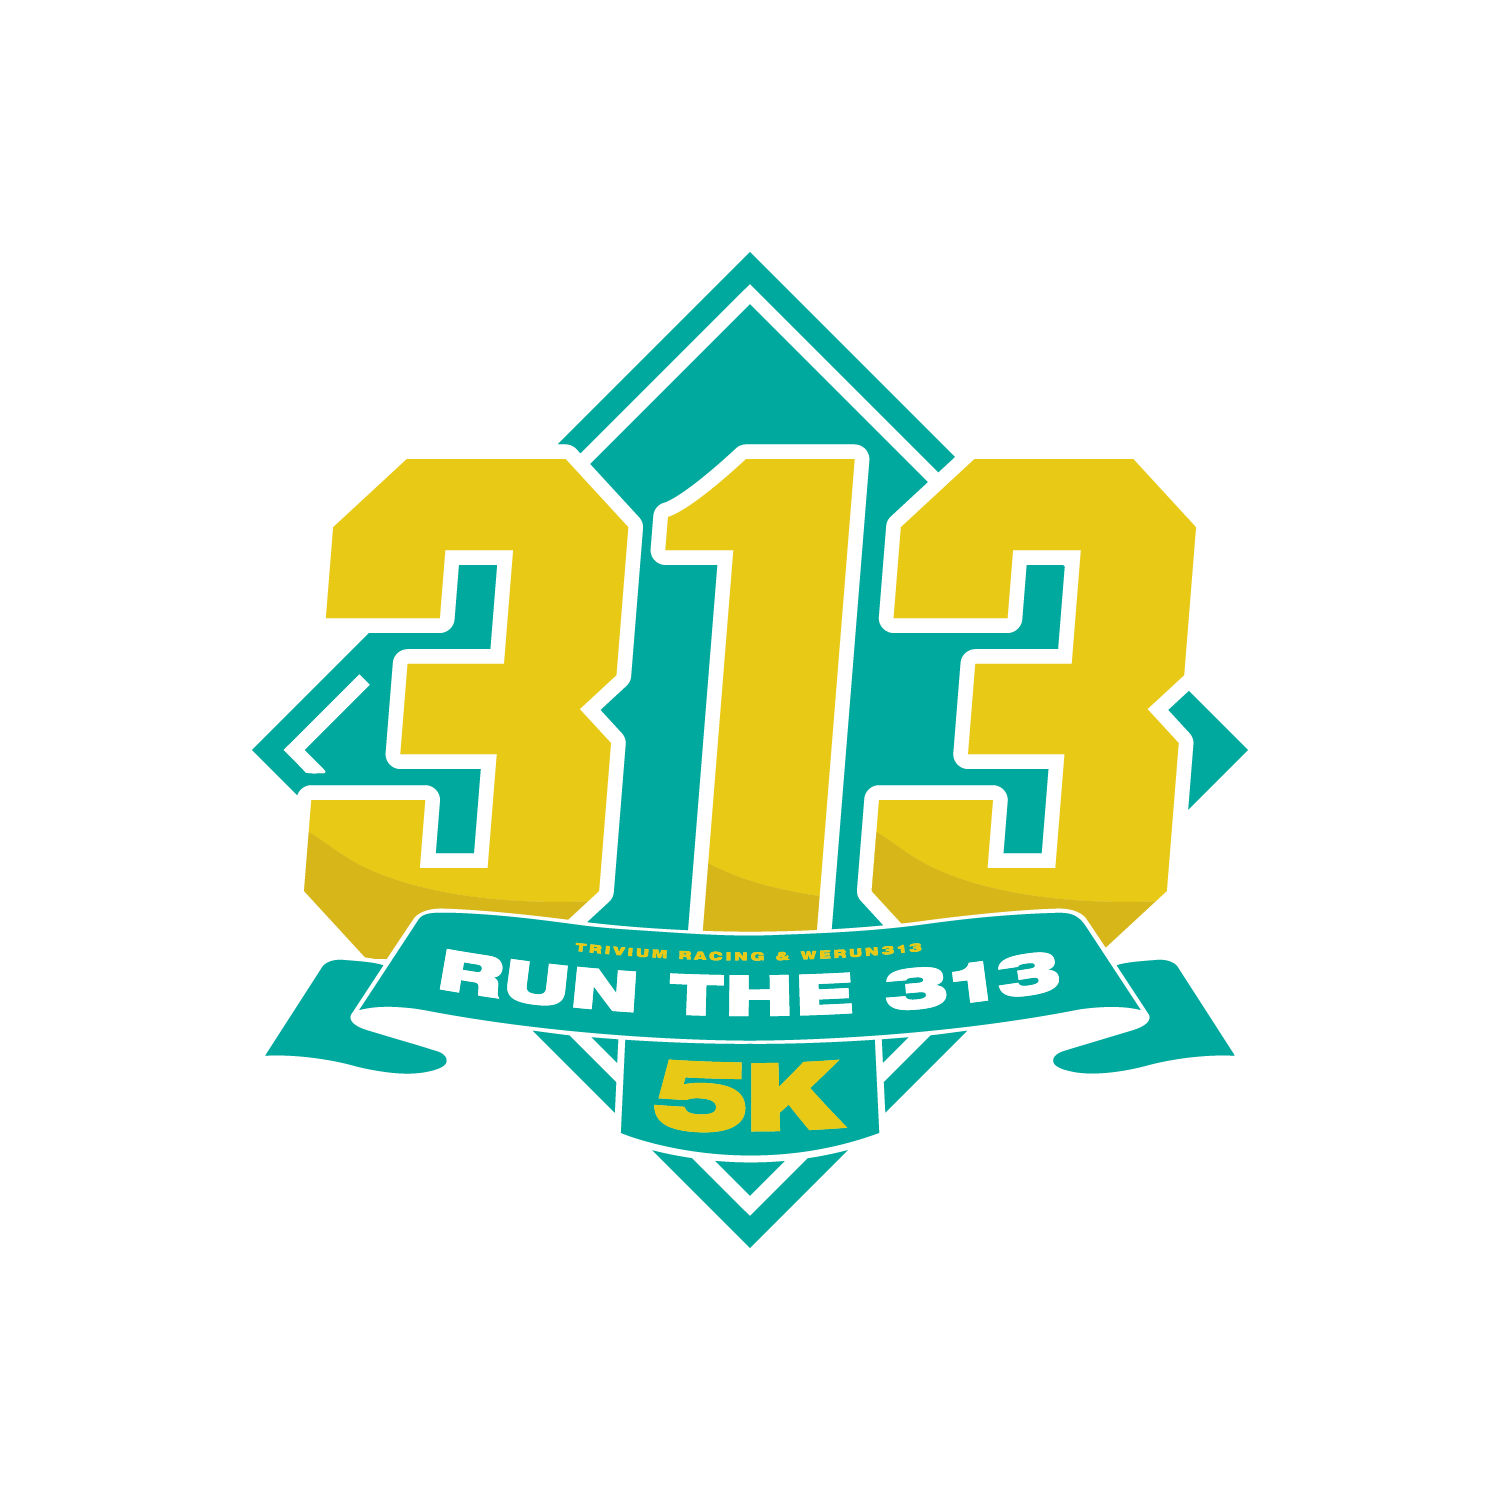 Run the 313 5K logo on RaceRaves